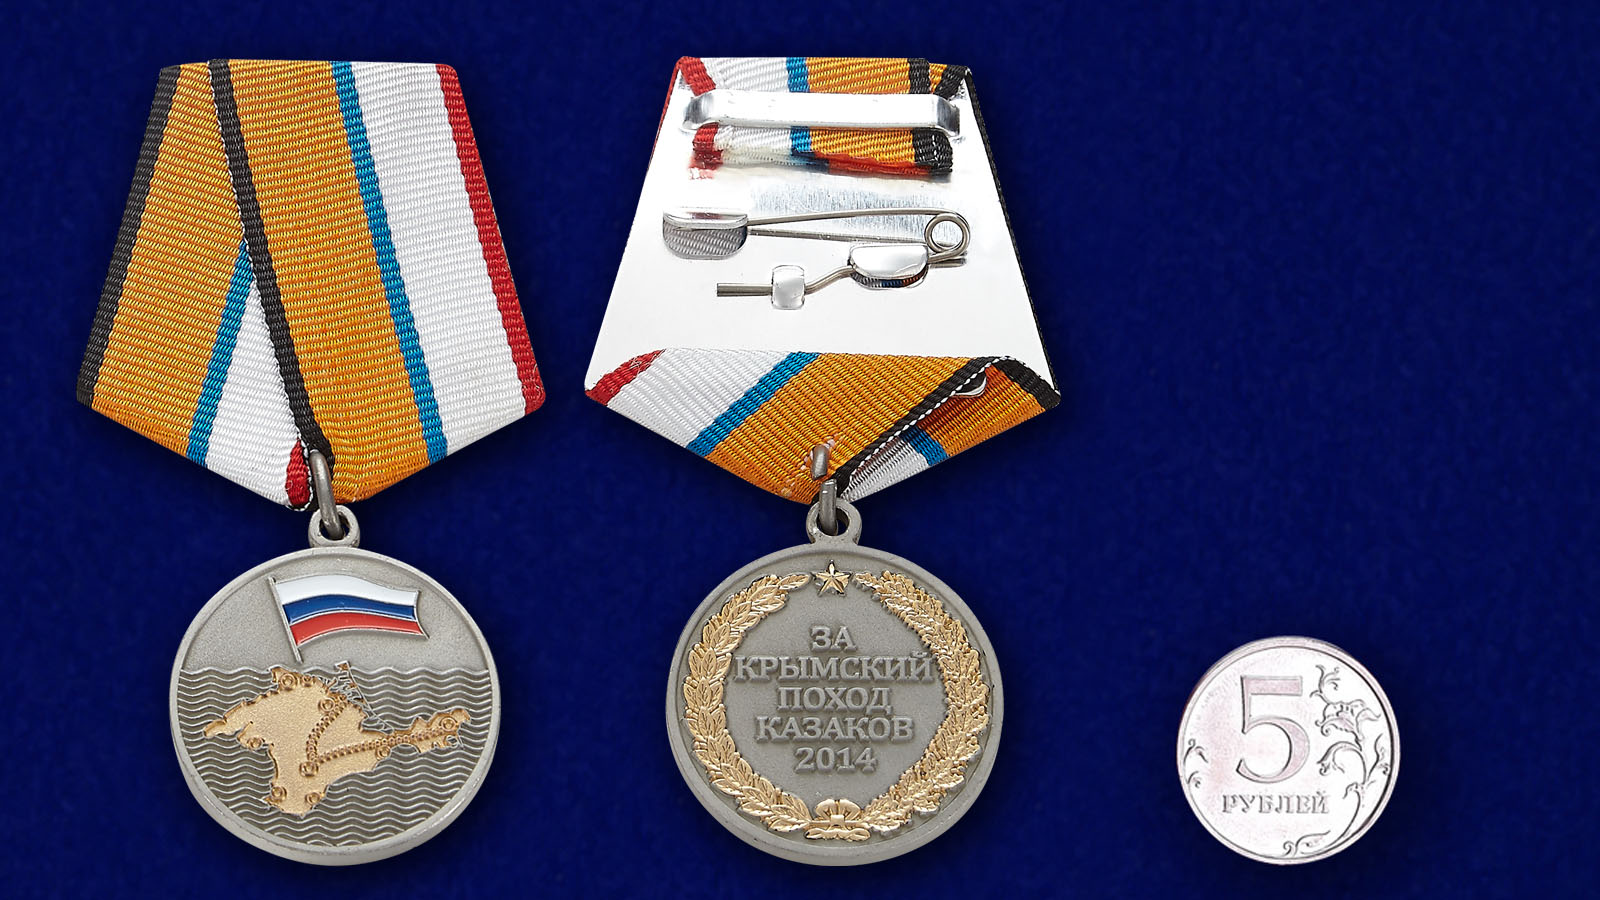 Медаль "За Крымский поход казаков-2014" 